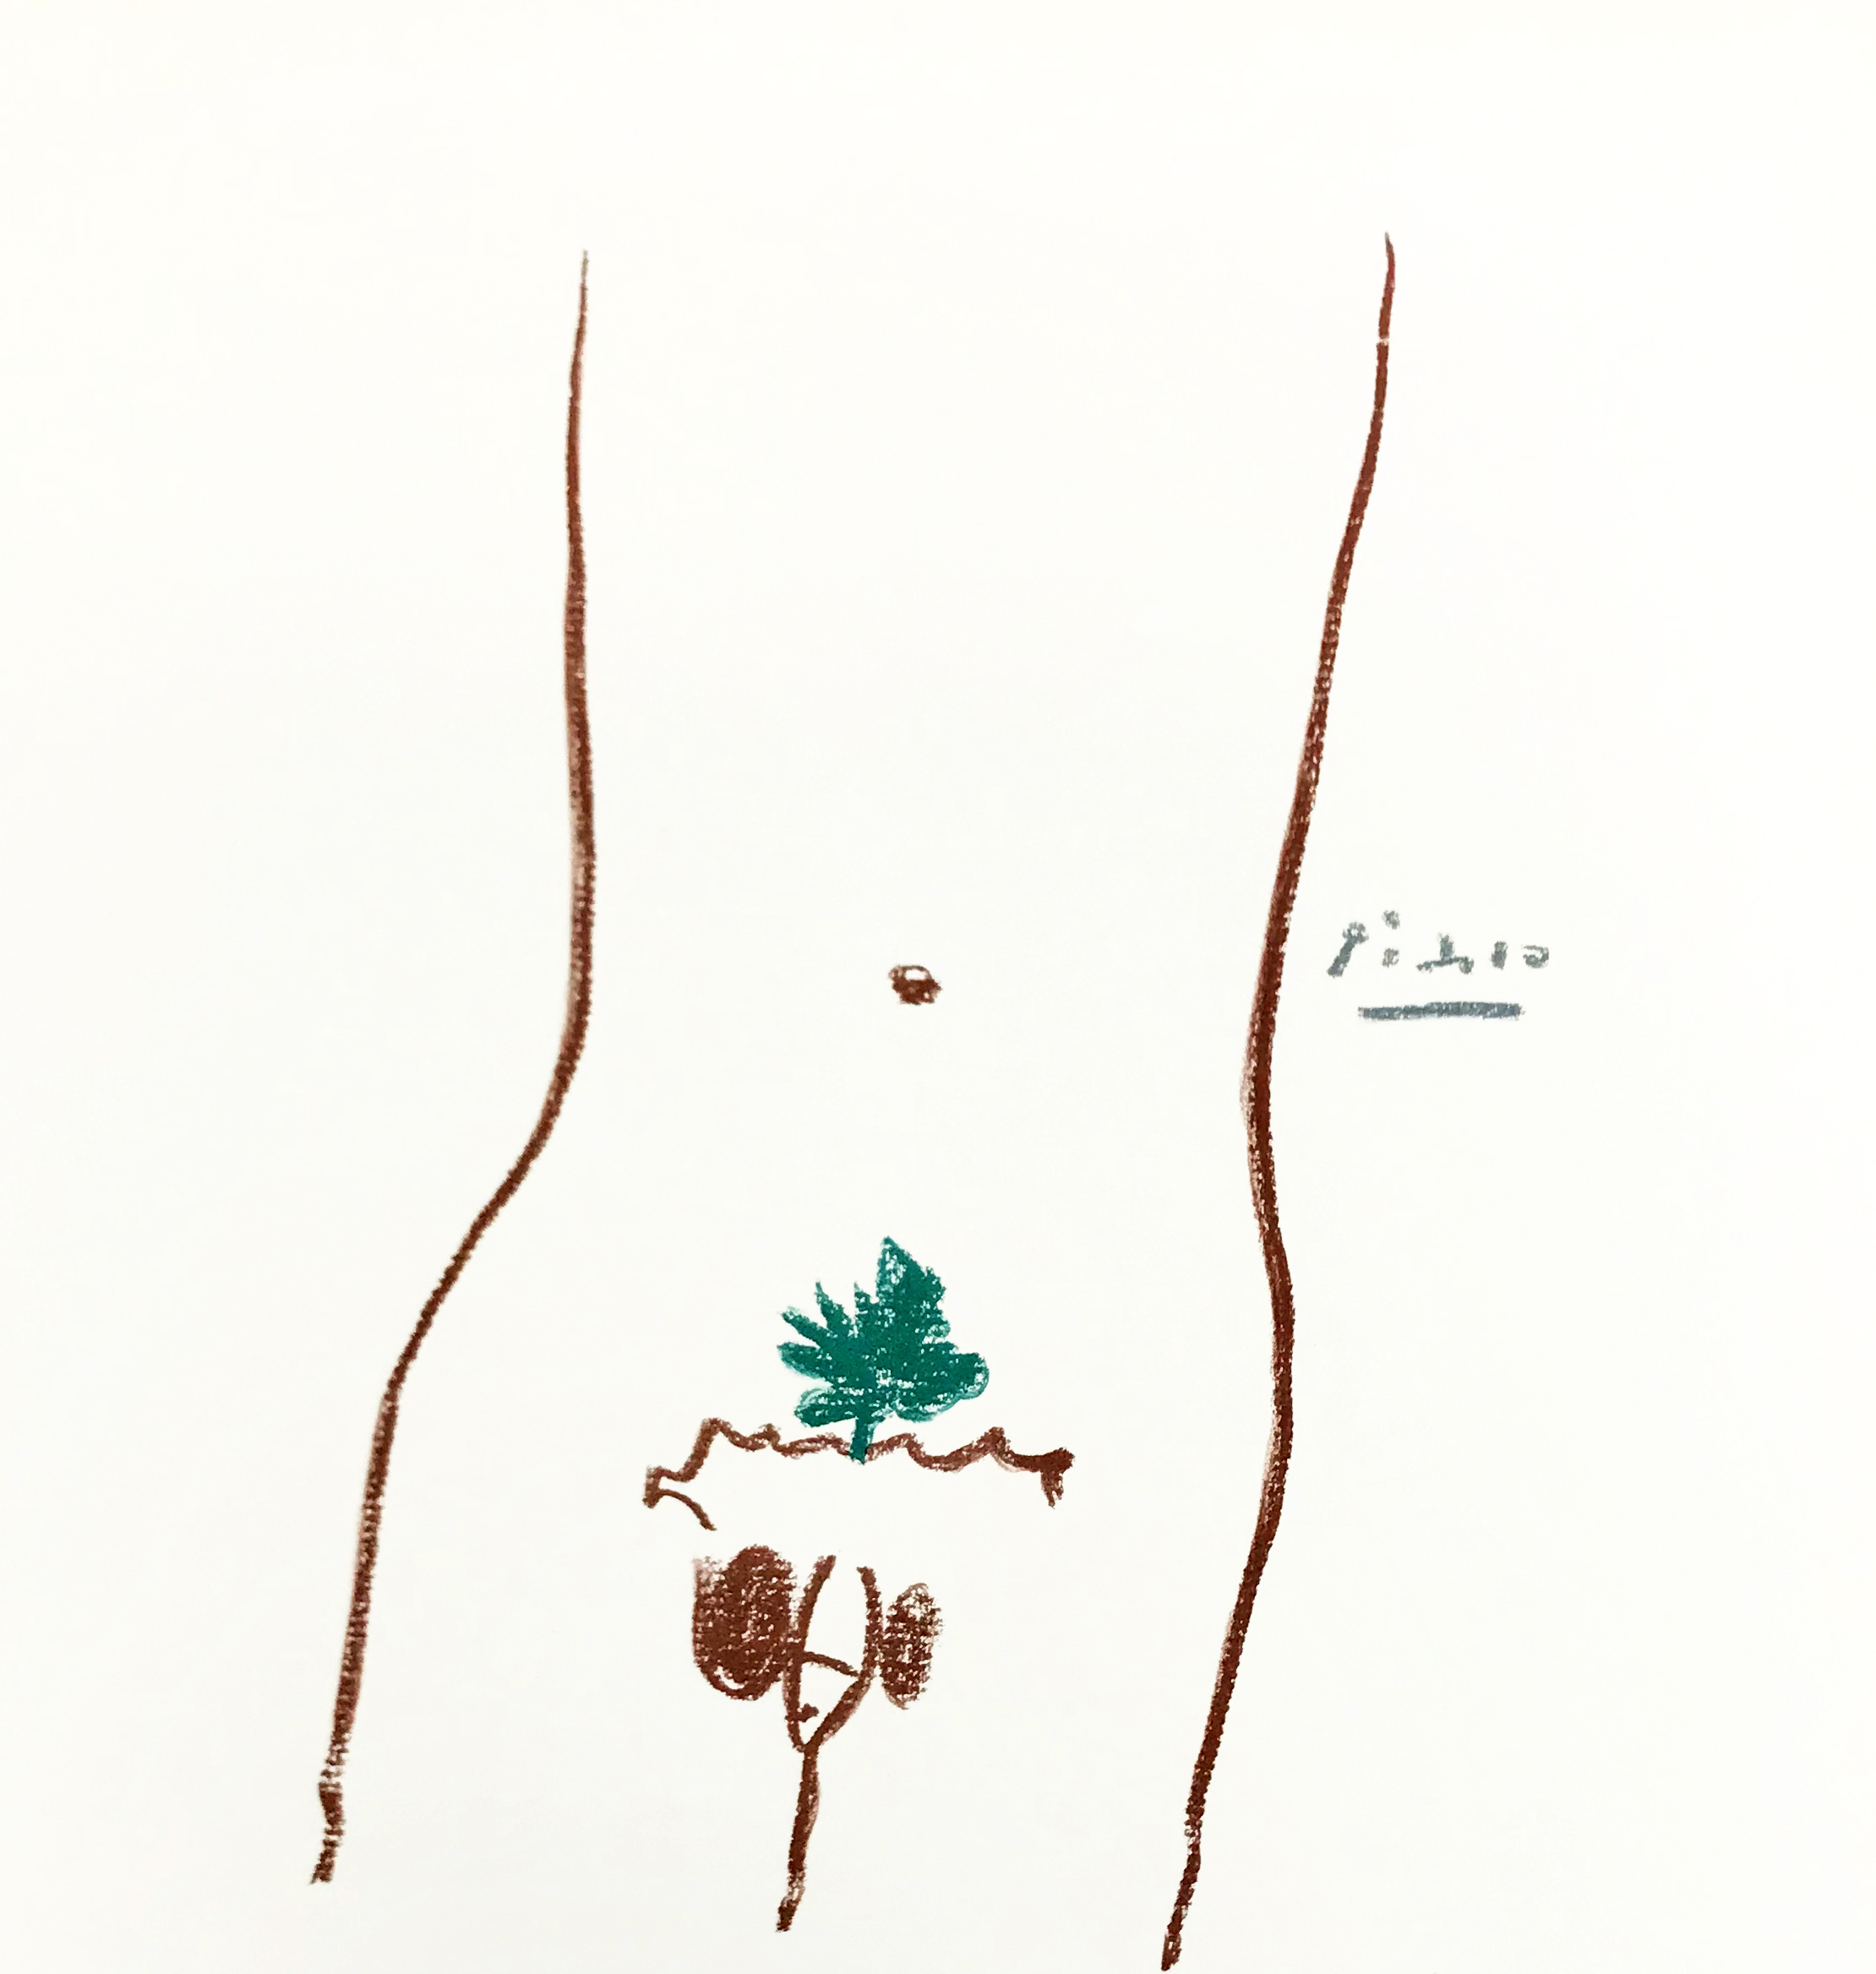 Pablo Picasso Lithograph 41 Adam 1968